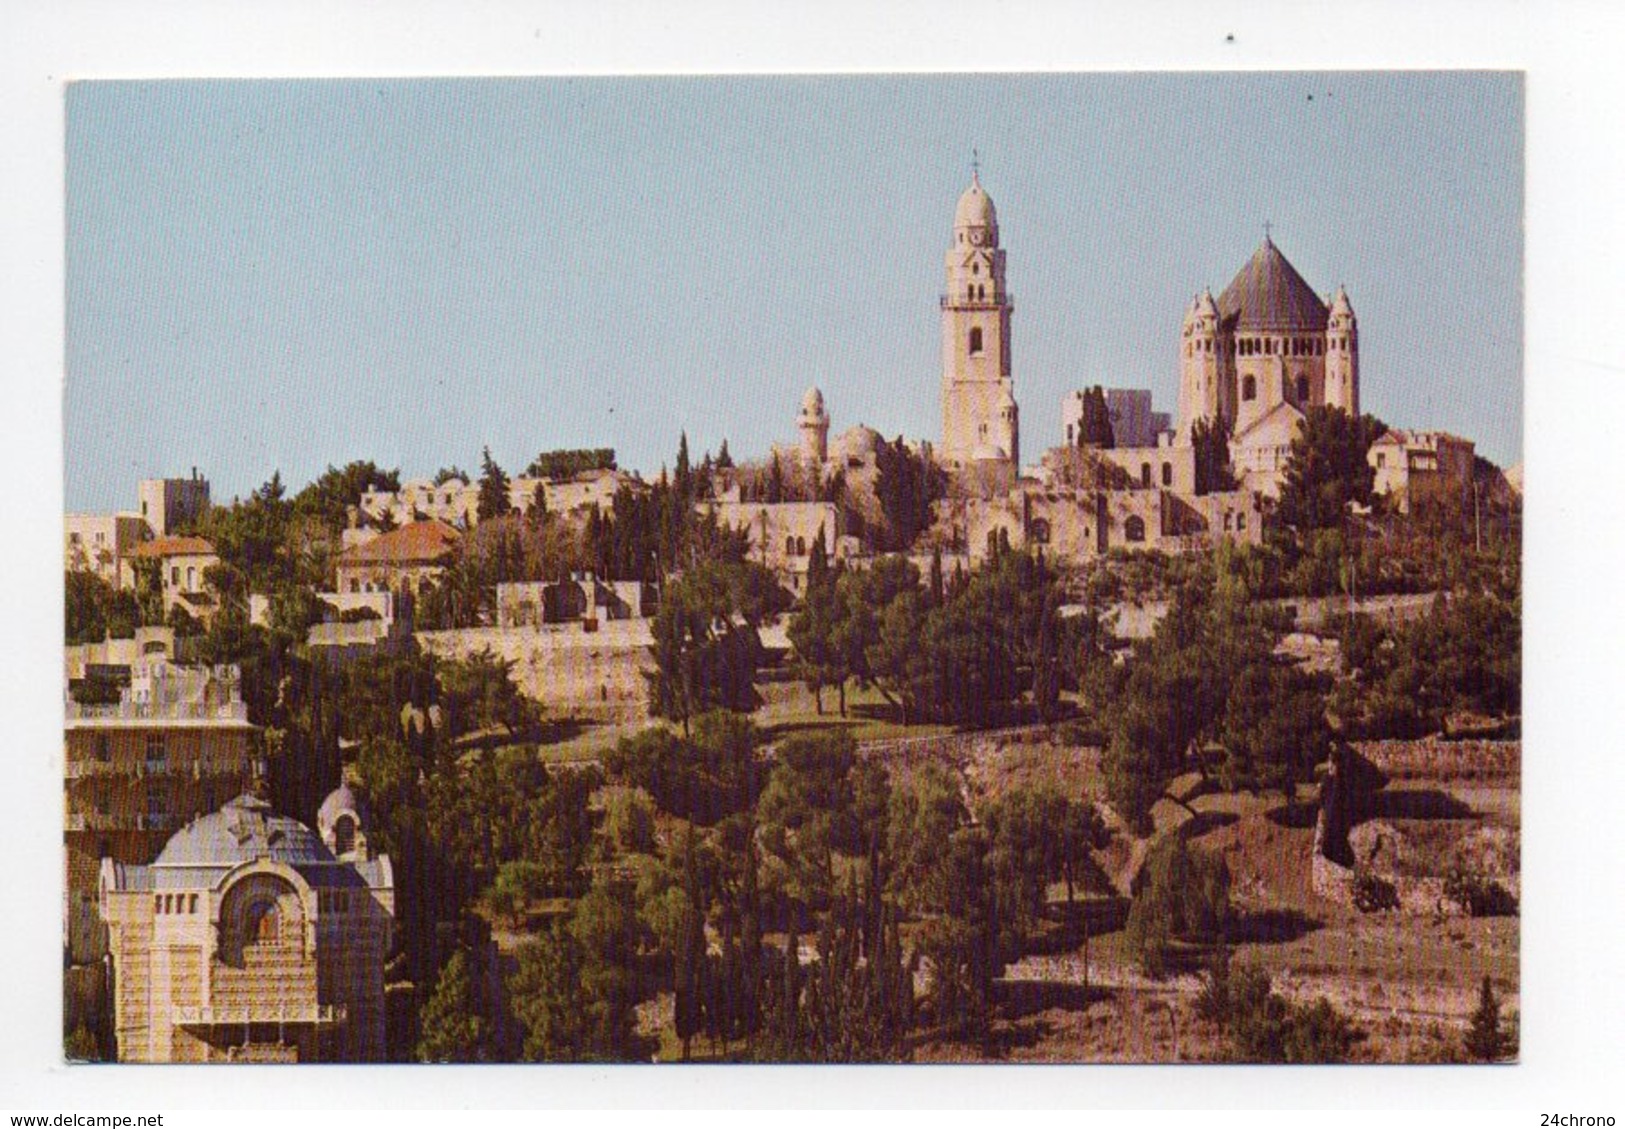 Israel: Jerusalem, Mount Zion (19-1823) - Israel